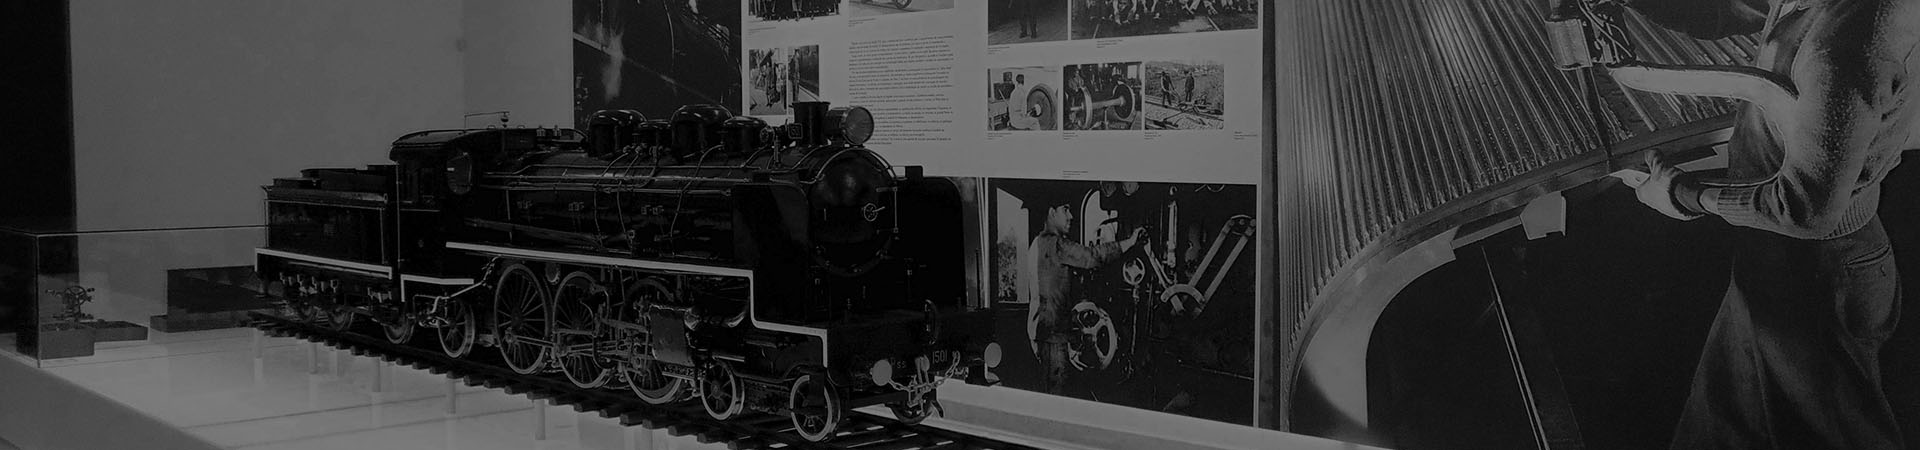 Photo of the exhibition Presidential Train at Oficinas do Vapor